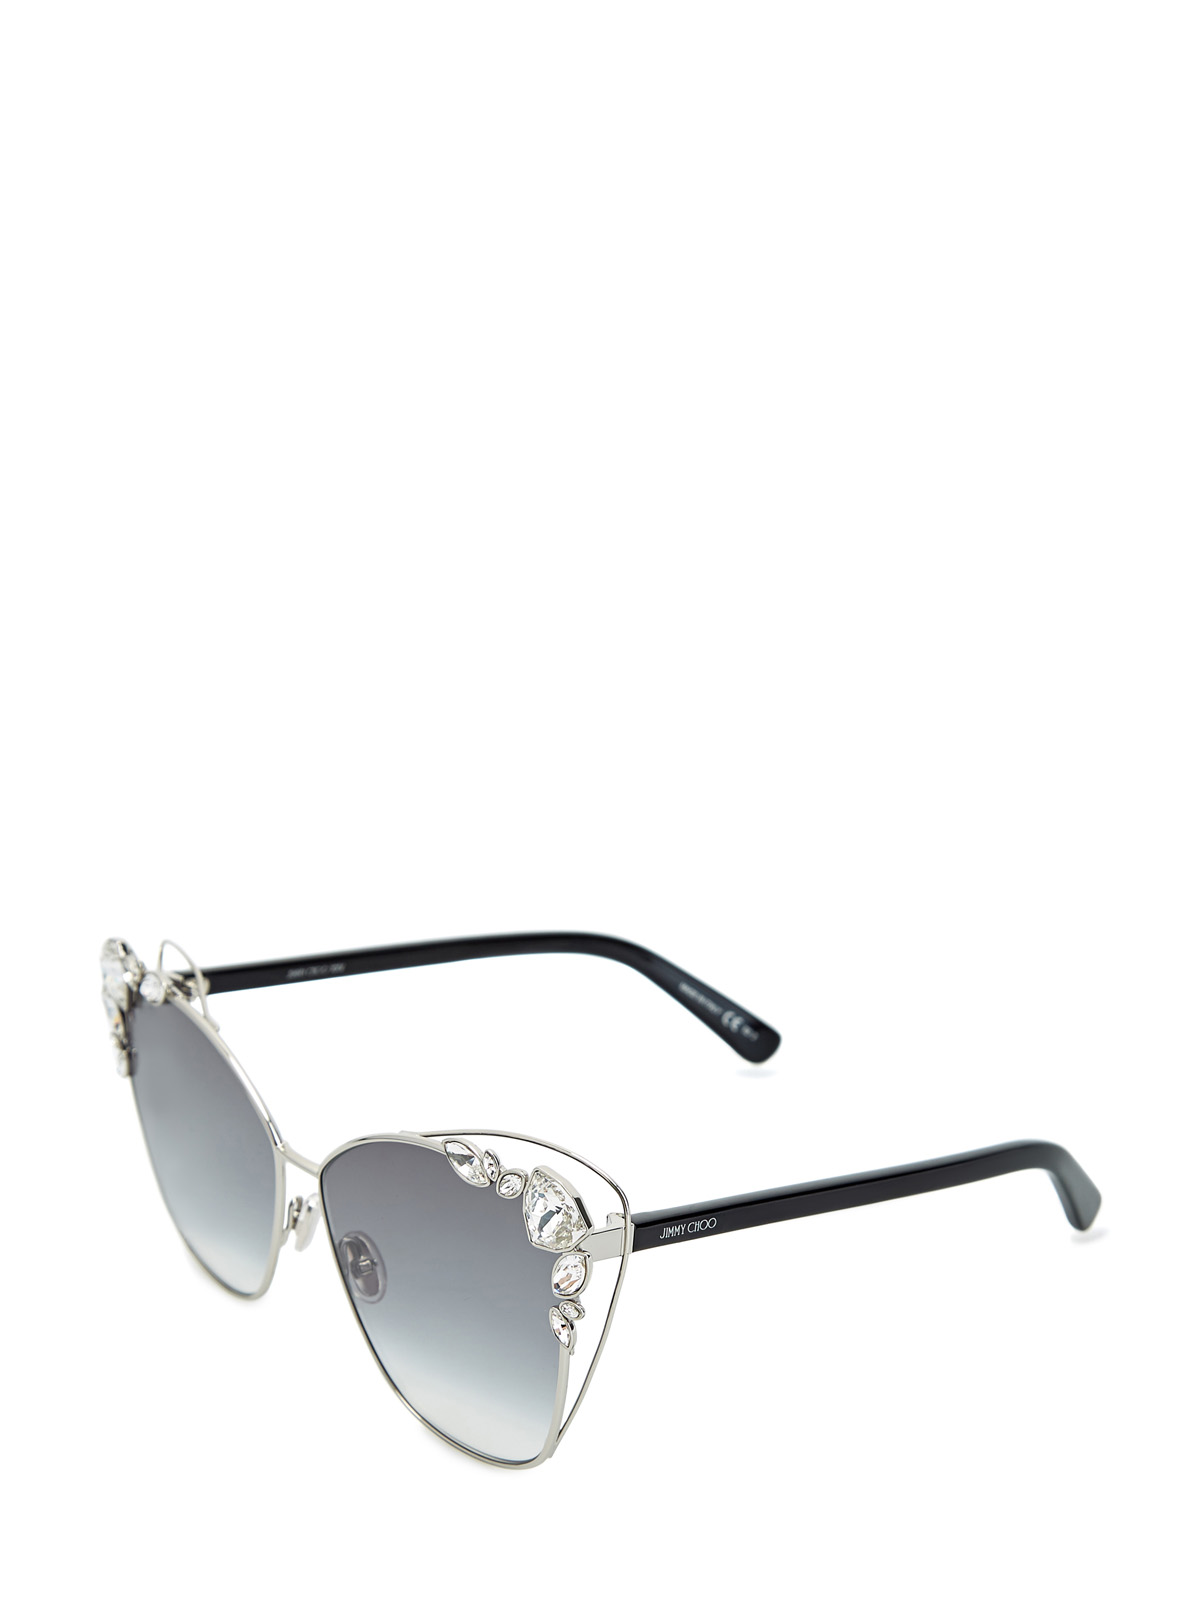 Солнцезащитные очки Kyla с кристаллами Swarovski JIMMY CHOO  (sunglasses) - фото 2